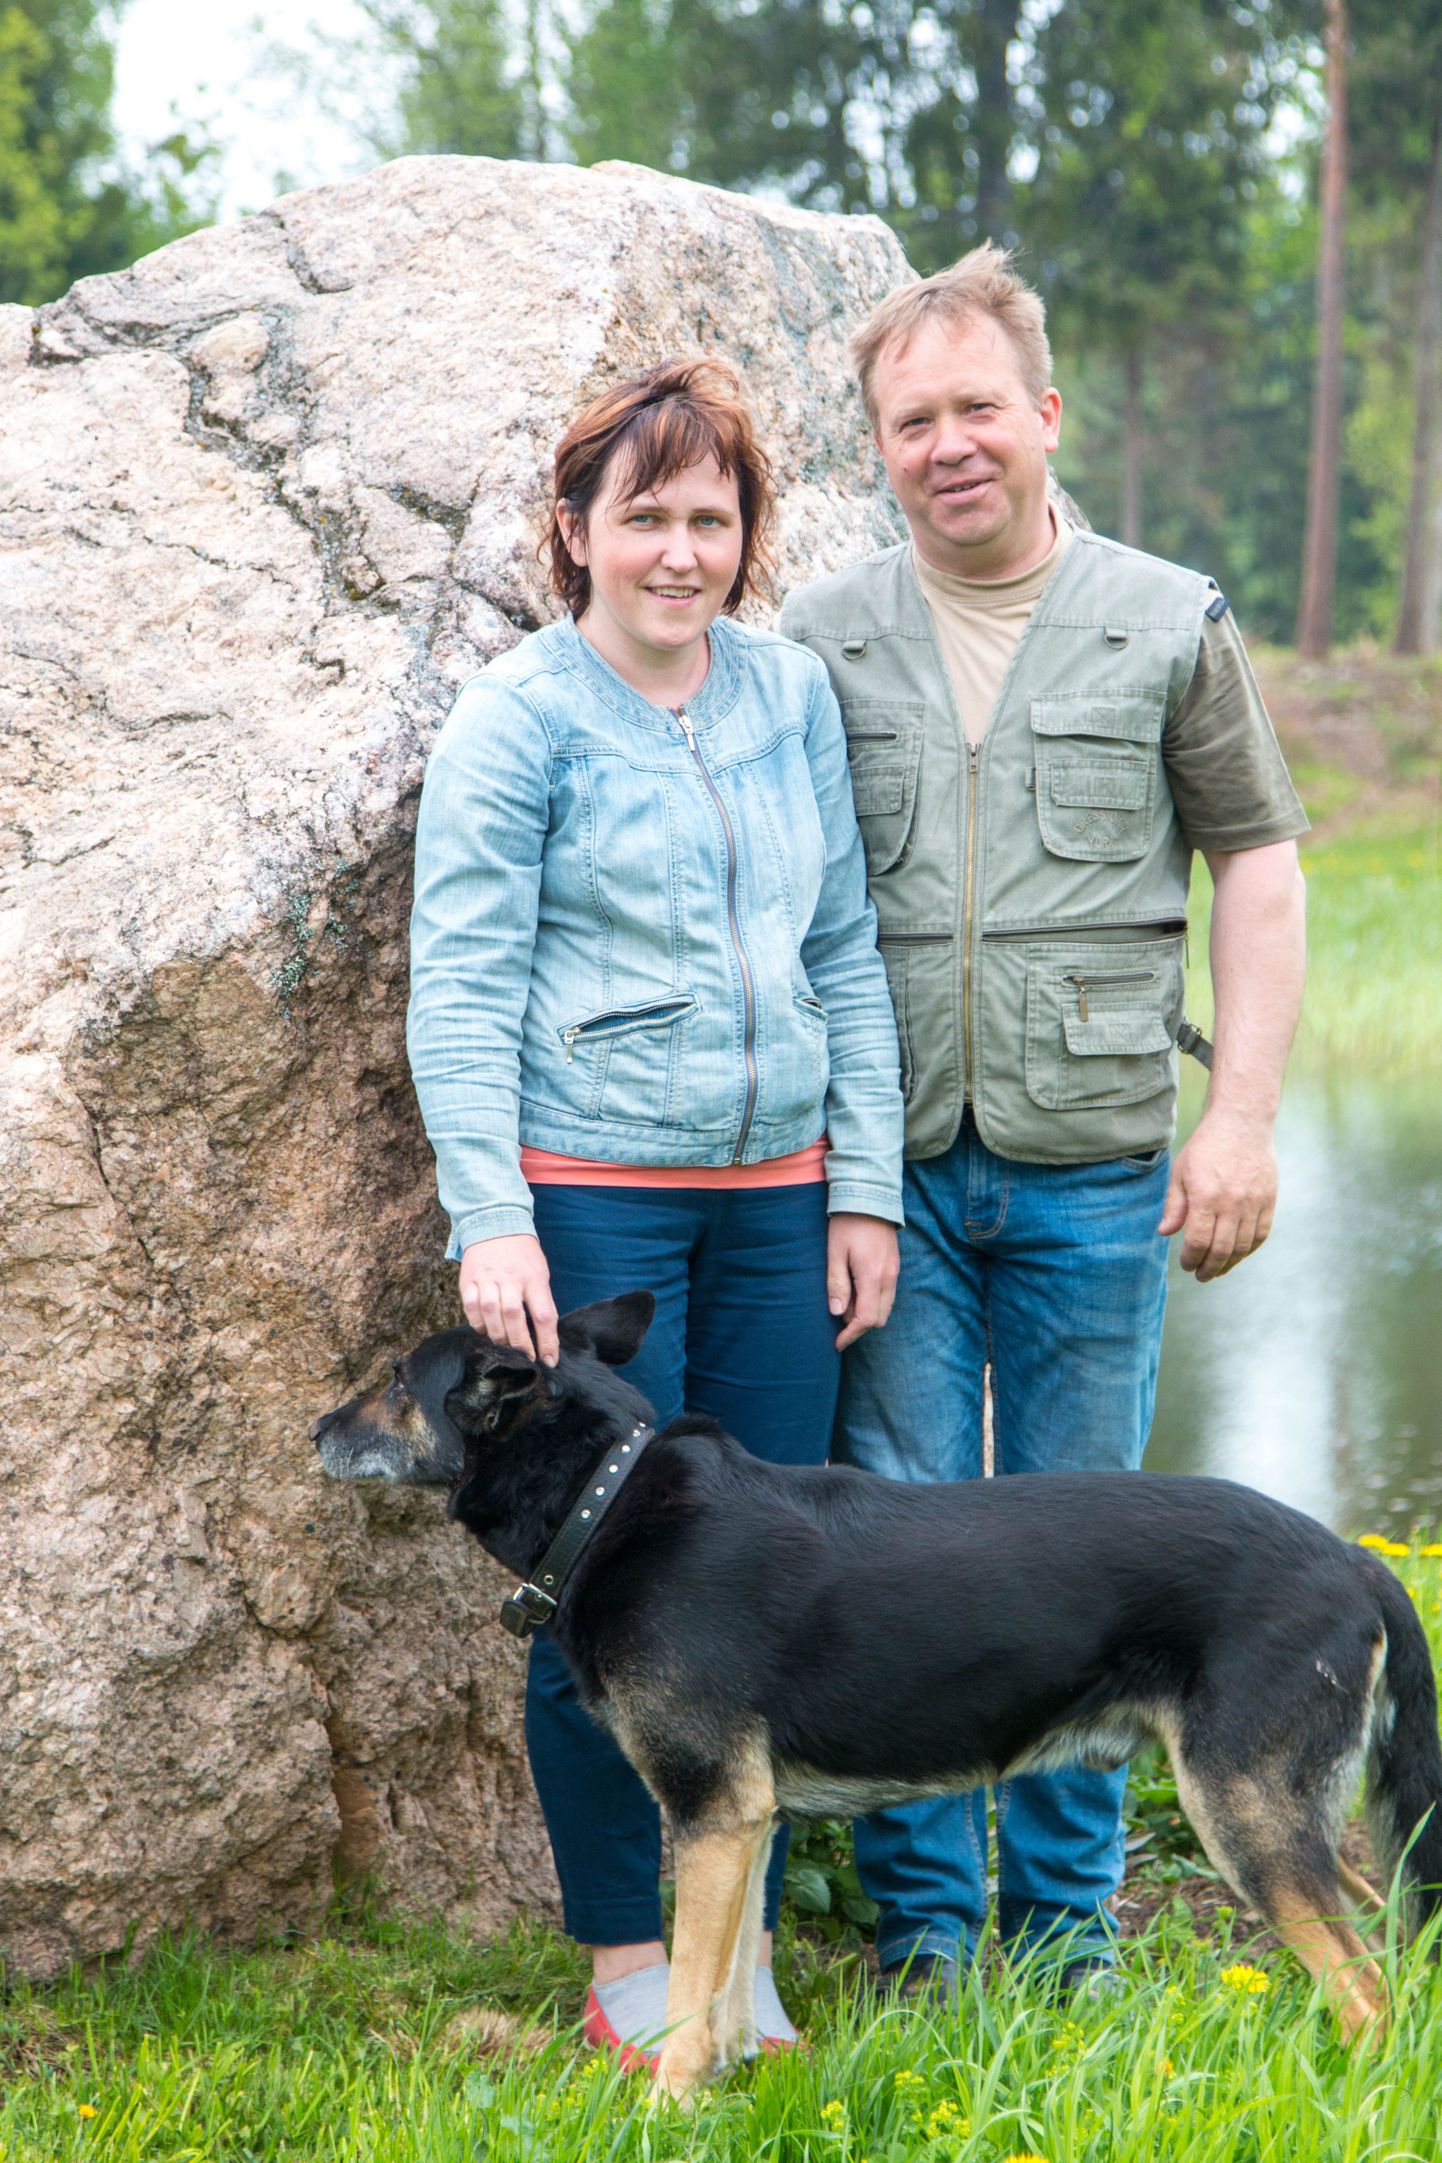 Kassiratta talu elanikud Esmar ja Reilika Naruski ning koer Riks koos oma maalt leitud kivimürakaga, mida püüdsid algul teisaldada, kuid mis nüüd on jäänud aeda kaunistama.